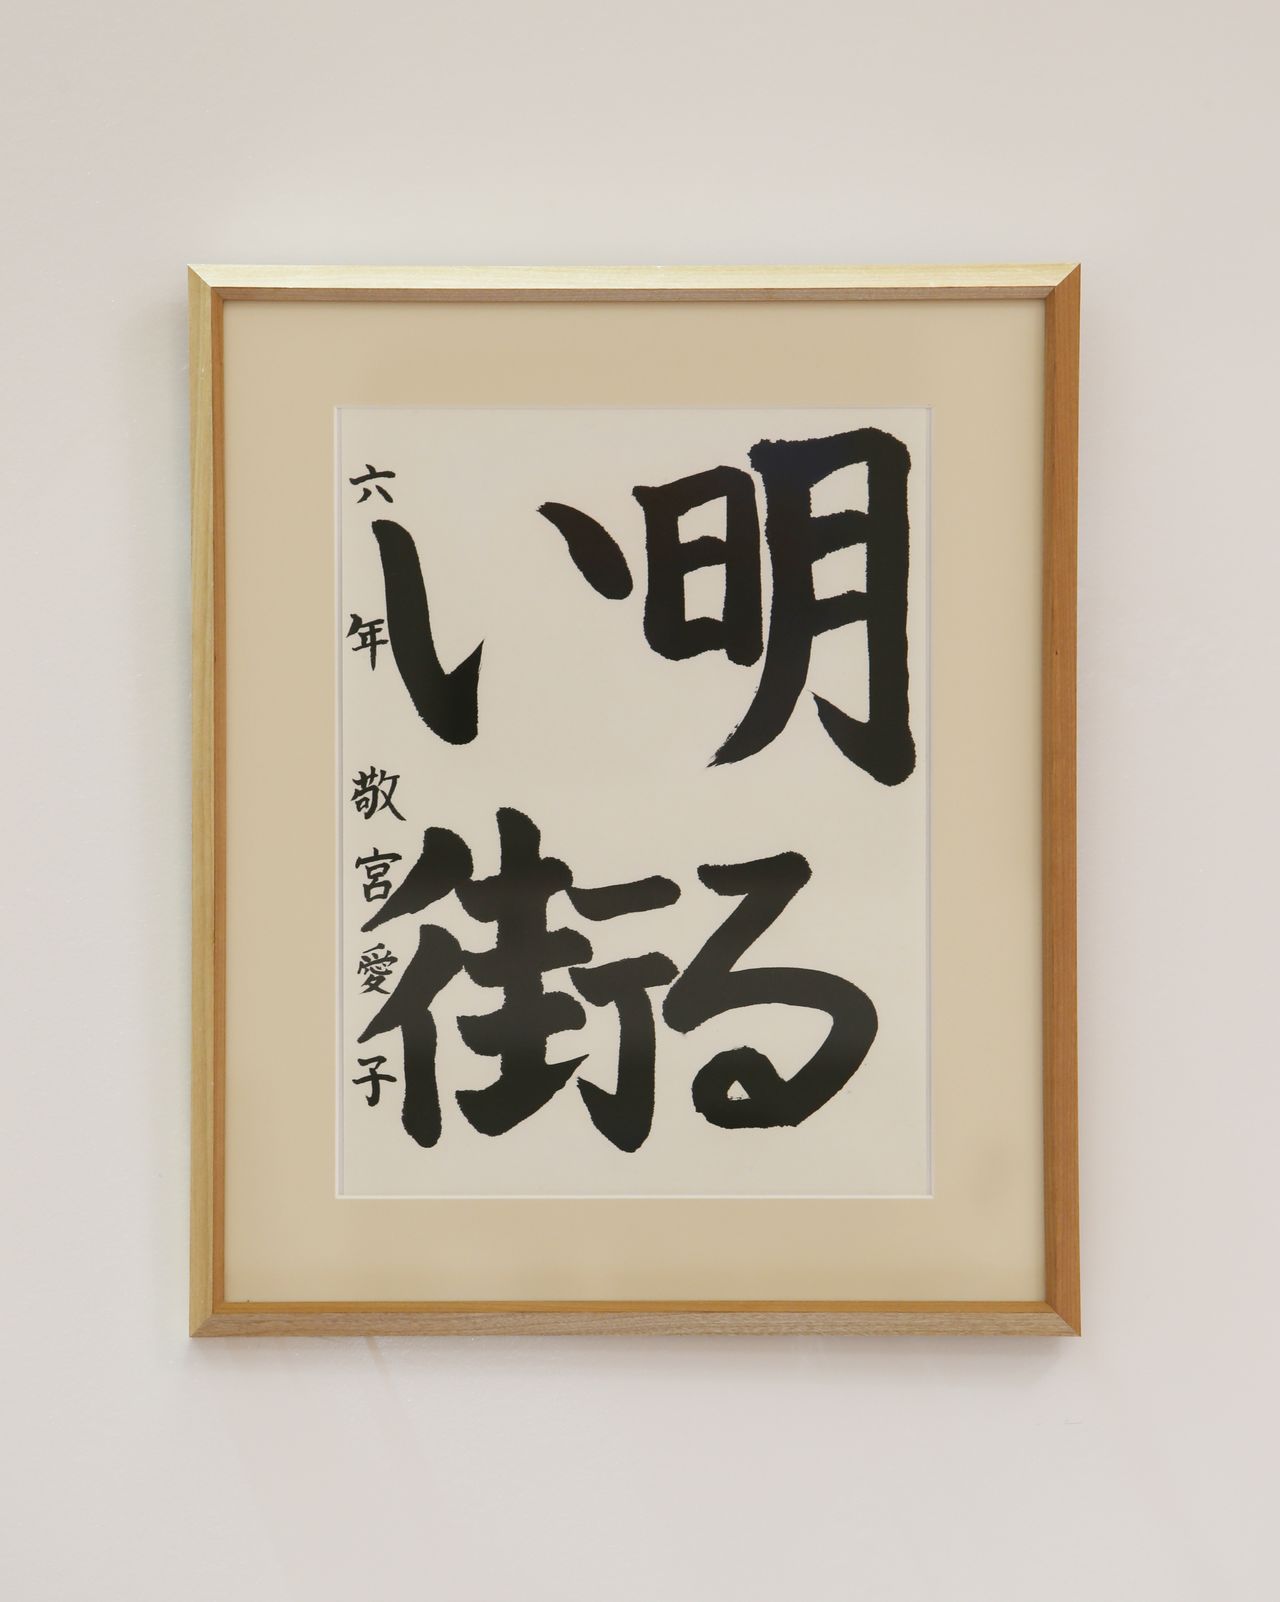 Надписи Айко на выставке фестиваля культуры персонала императорского двора (11 декабря 2013 г., Jiji Press)